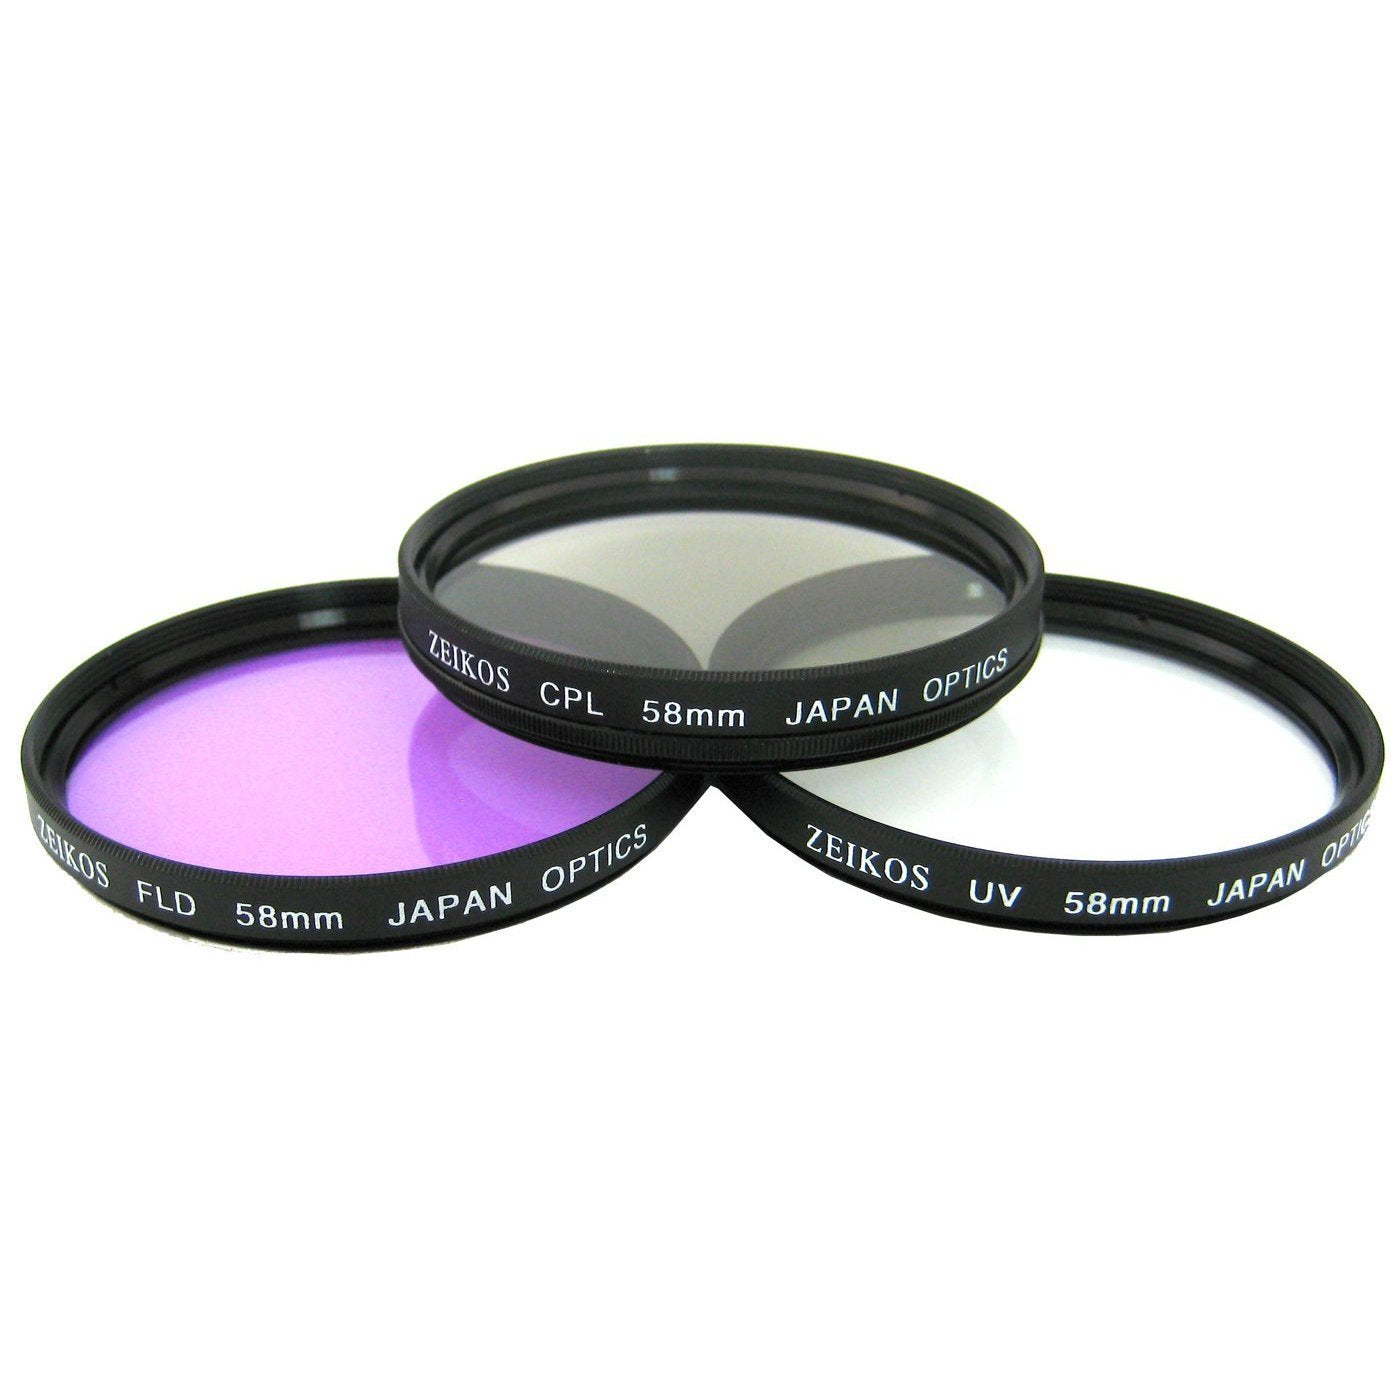 Nikon 55-300mm f/4.5-5.6G ED VR AF-S DX Nikkor Zoom Lens for Nikon Digital SLR (White Box) + 3 Piece Filter Kit w/Case + Lens Pouch + Microfiber Cleaning Cloth + Lens Pen Cleaner + Accessory Saver Bun Bundle